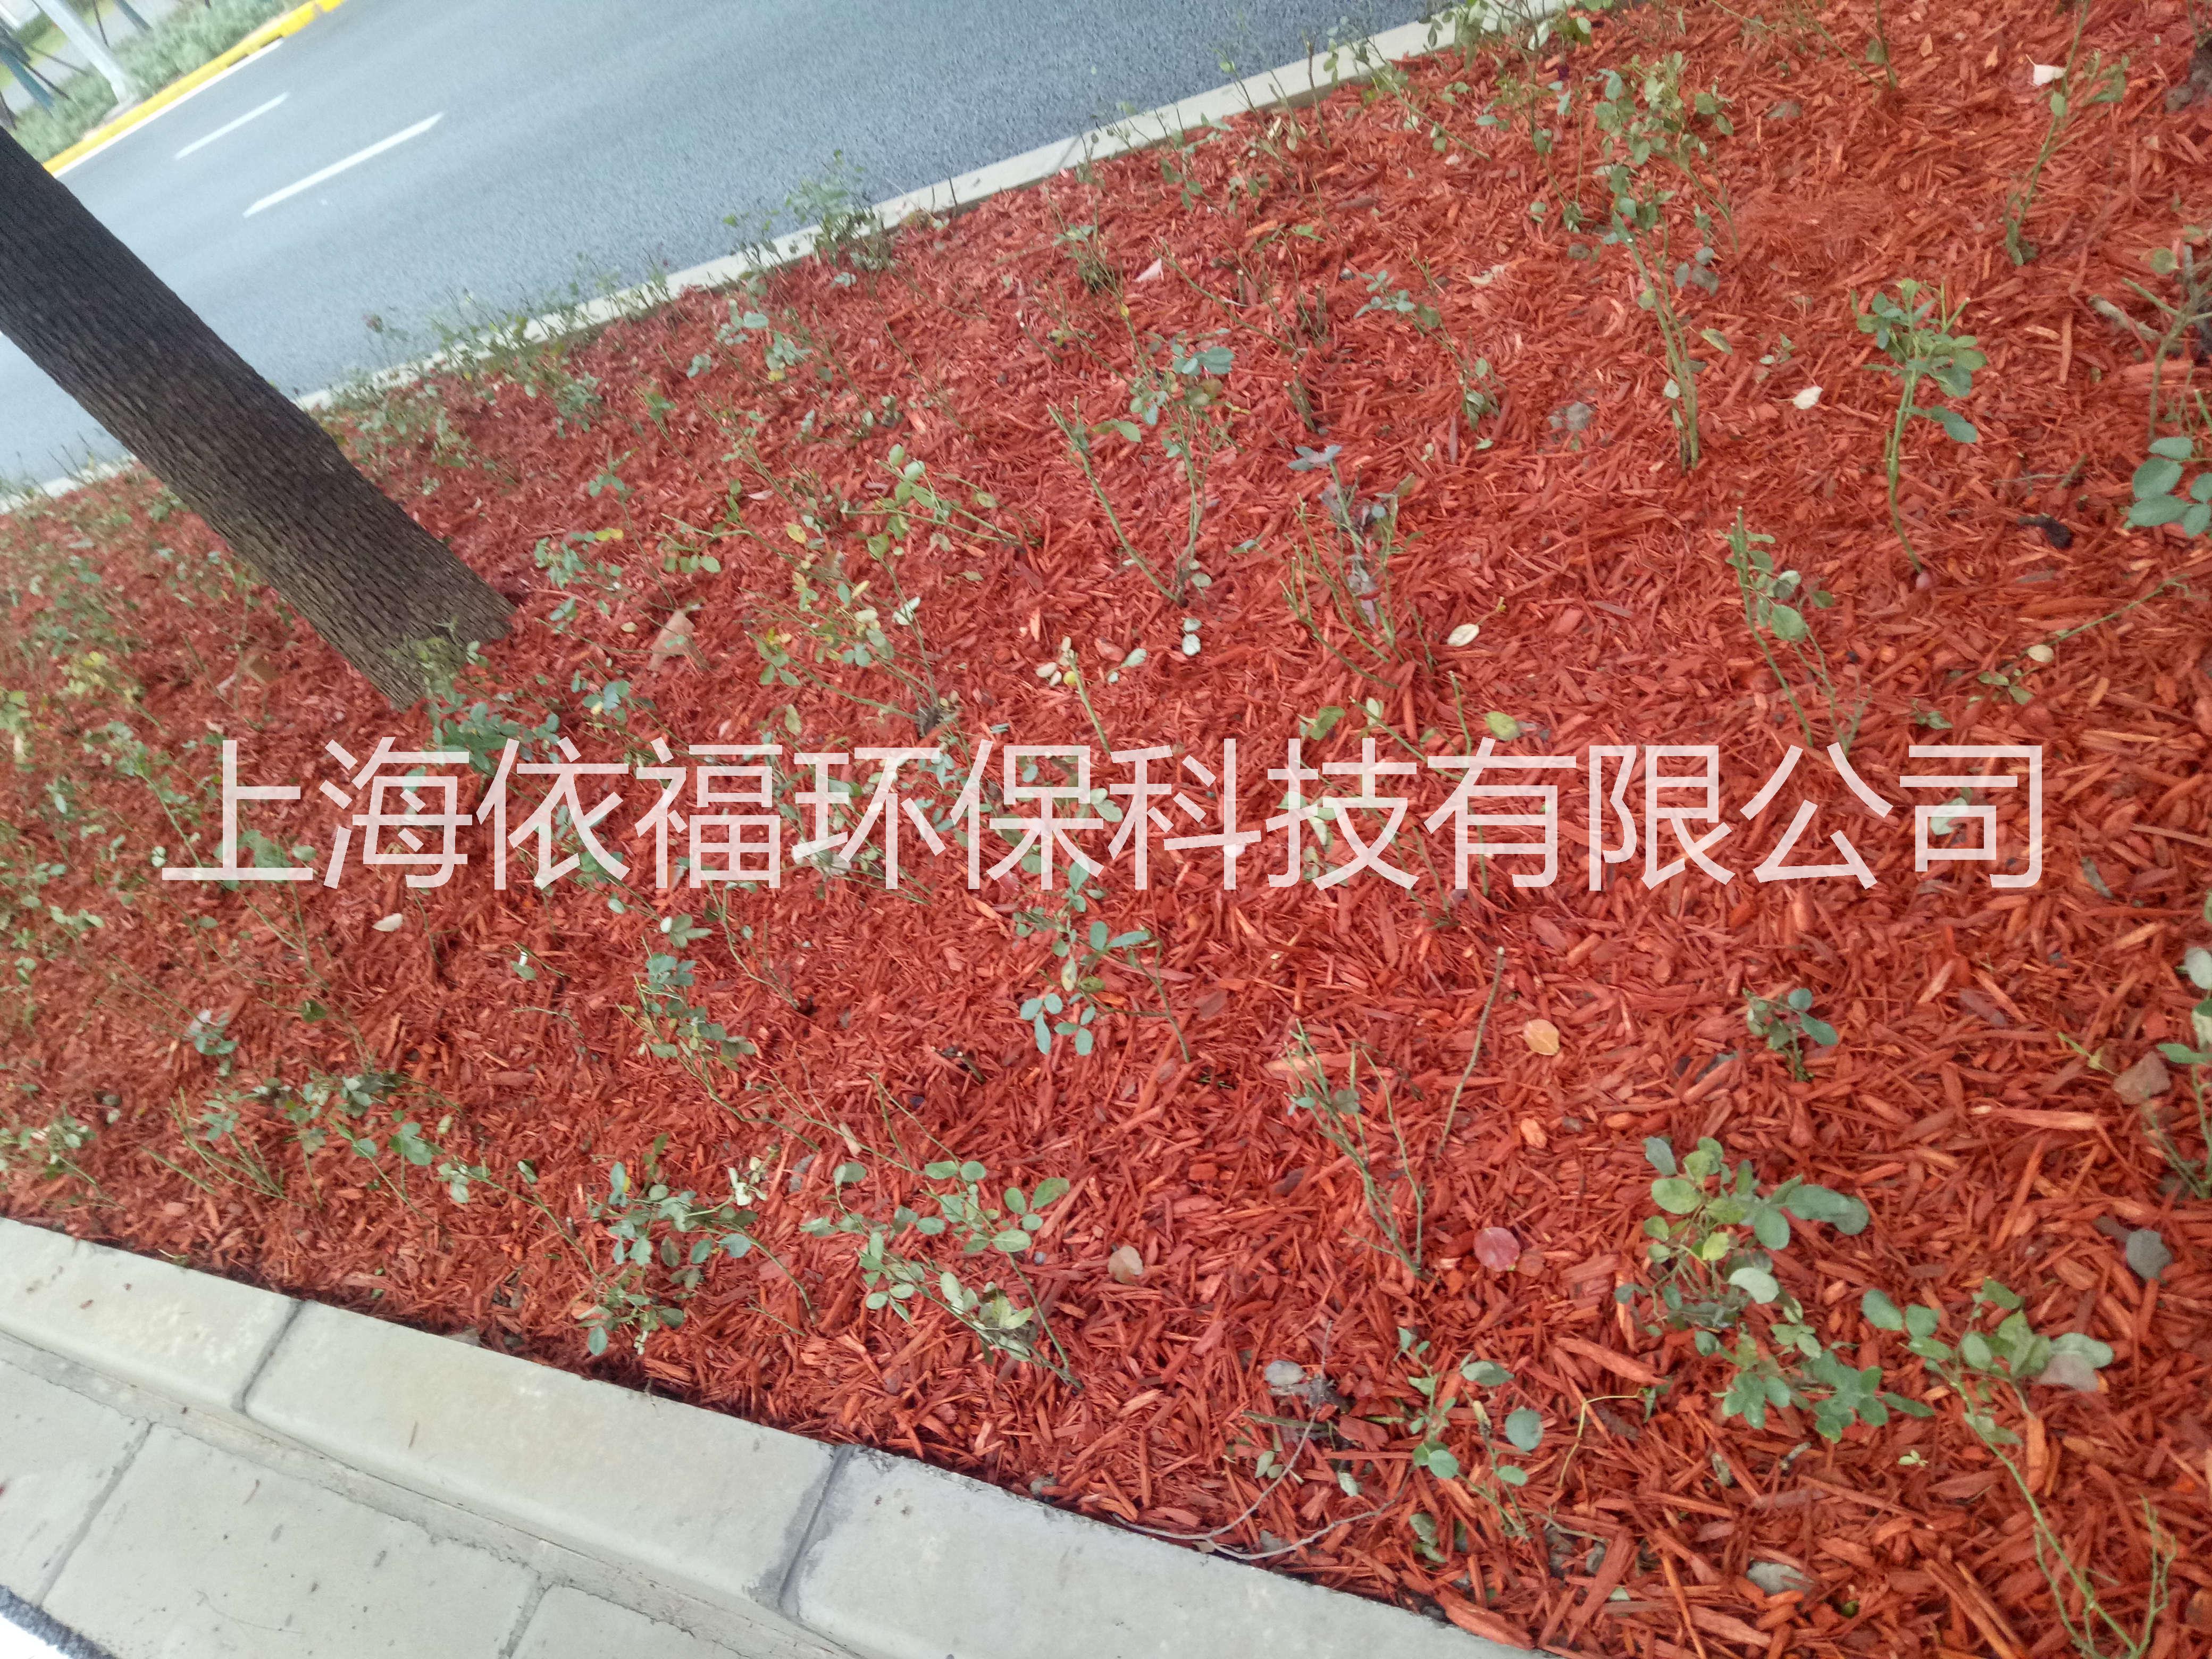 上海彩色有机覆盖物厂家 报价 供应商图片